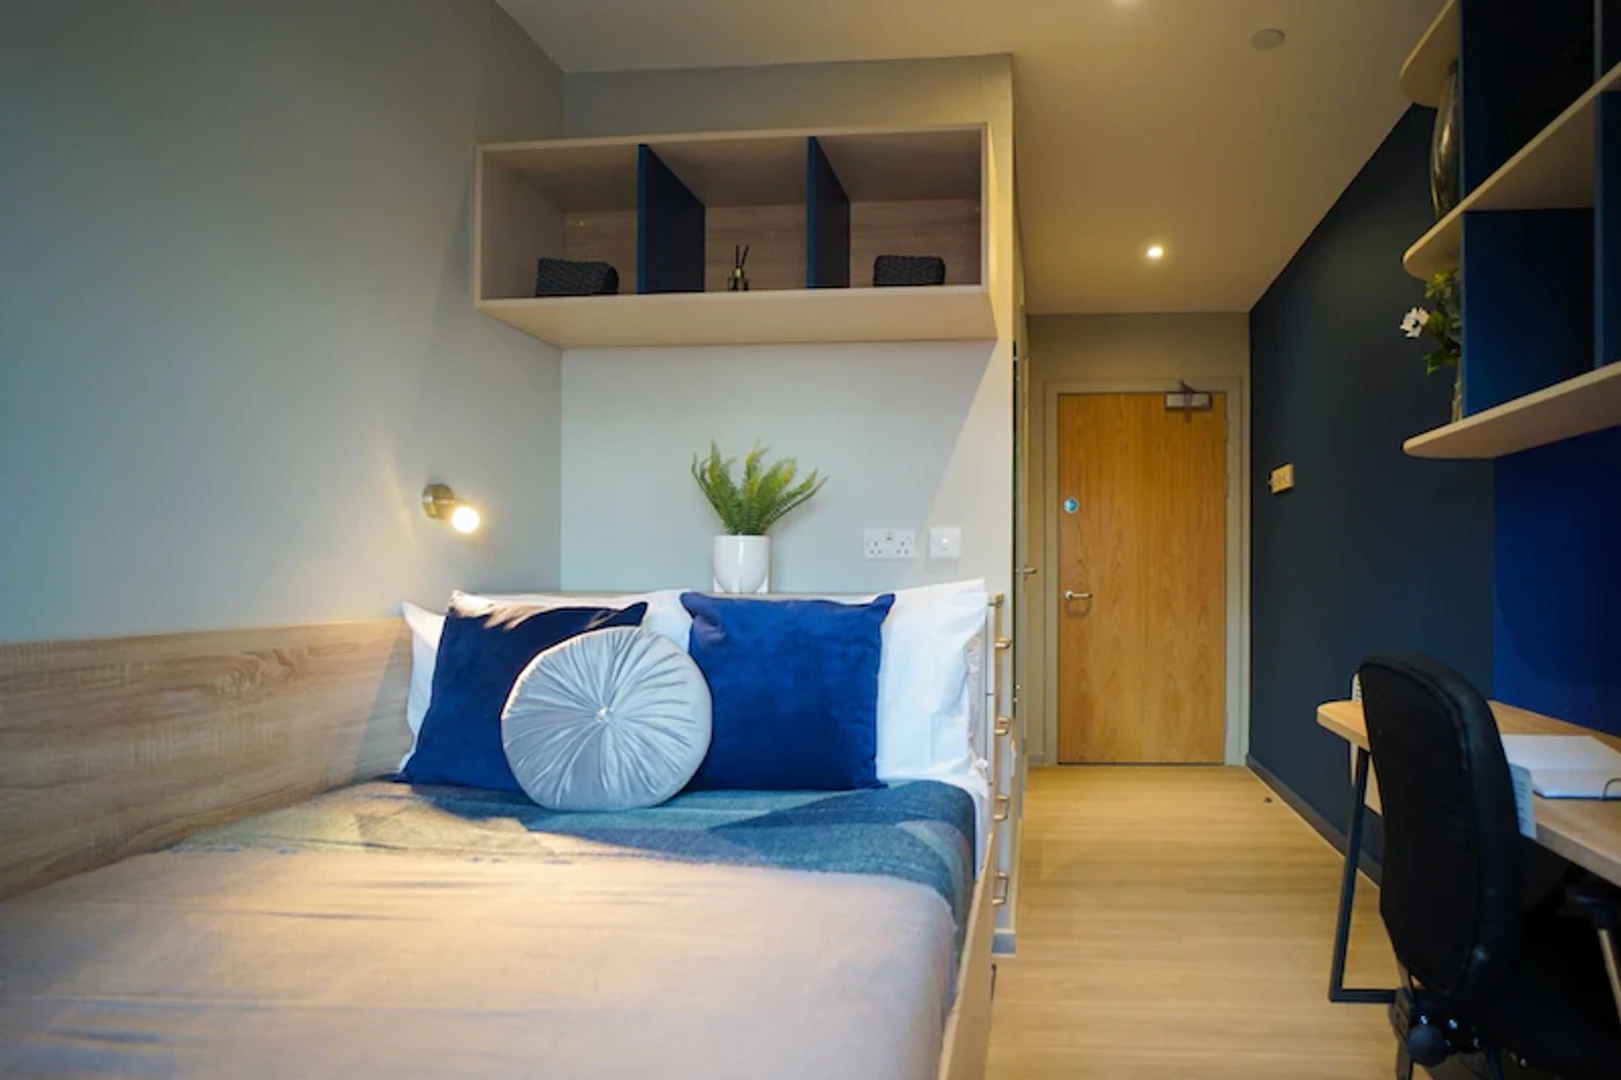 Alquiler de habitación en piso compartido en Edinburgh